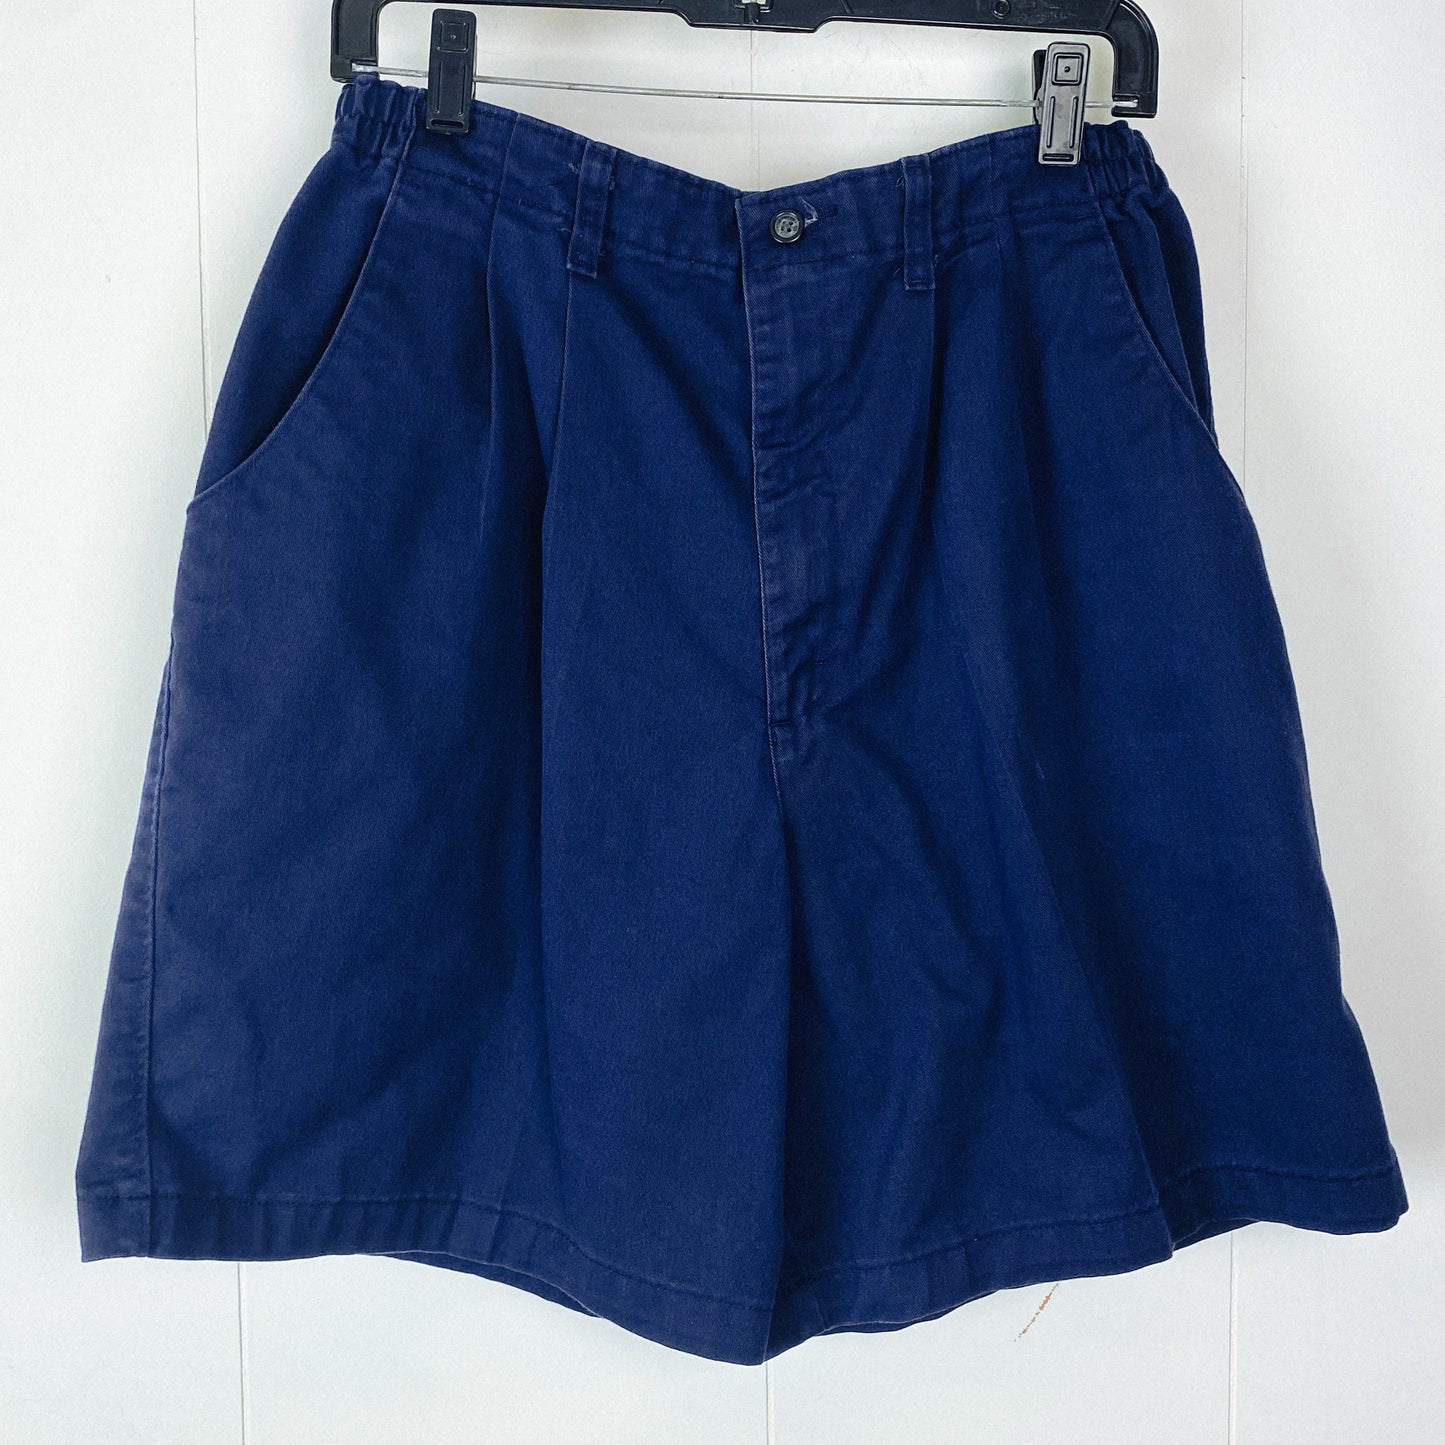 Navy Pleated Shorts - 16